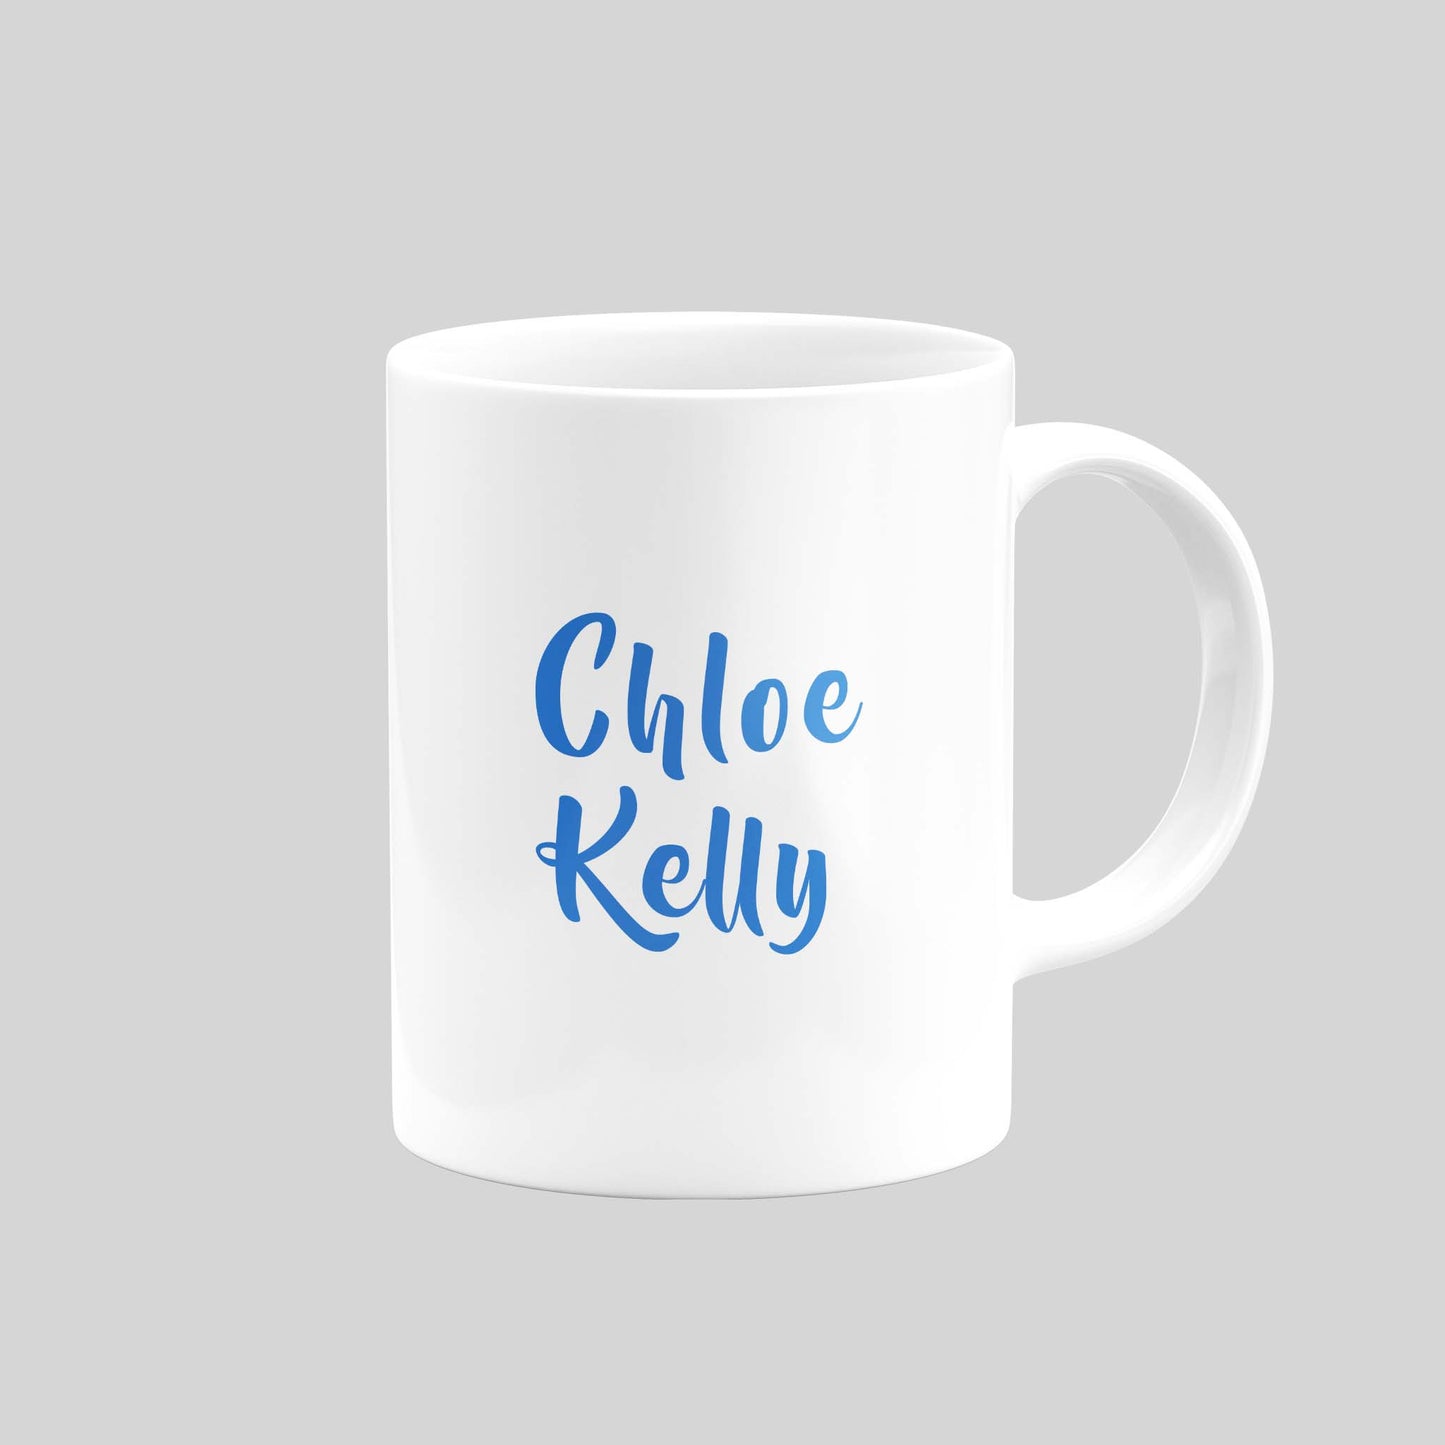 Chloe Kelly Mug